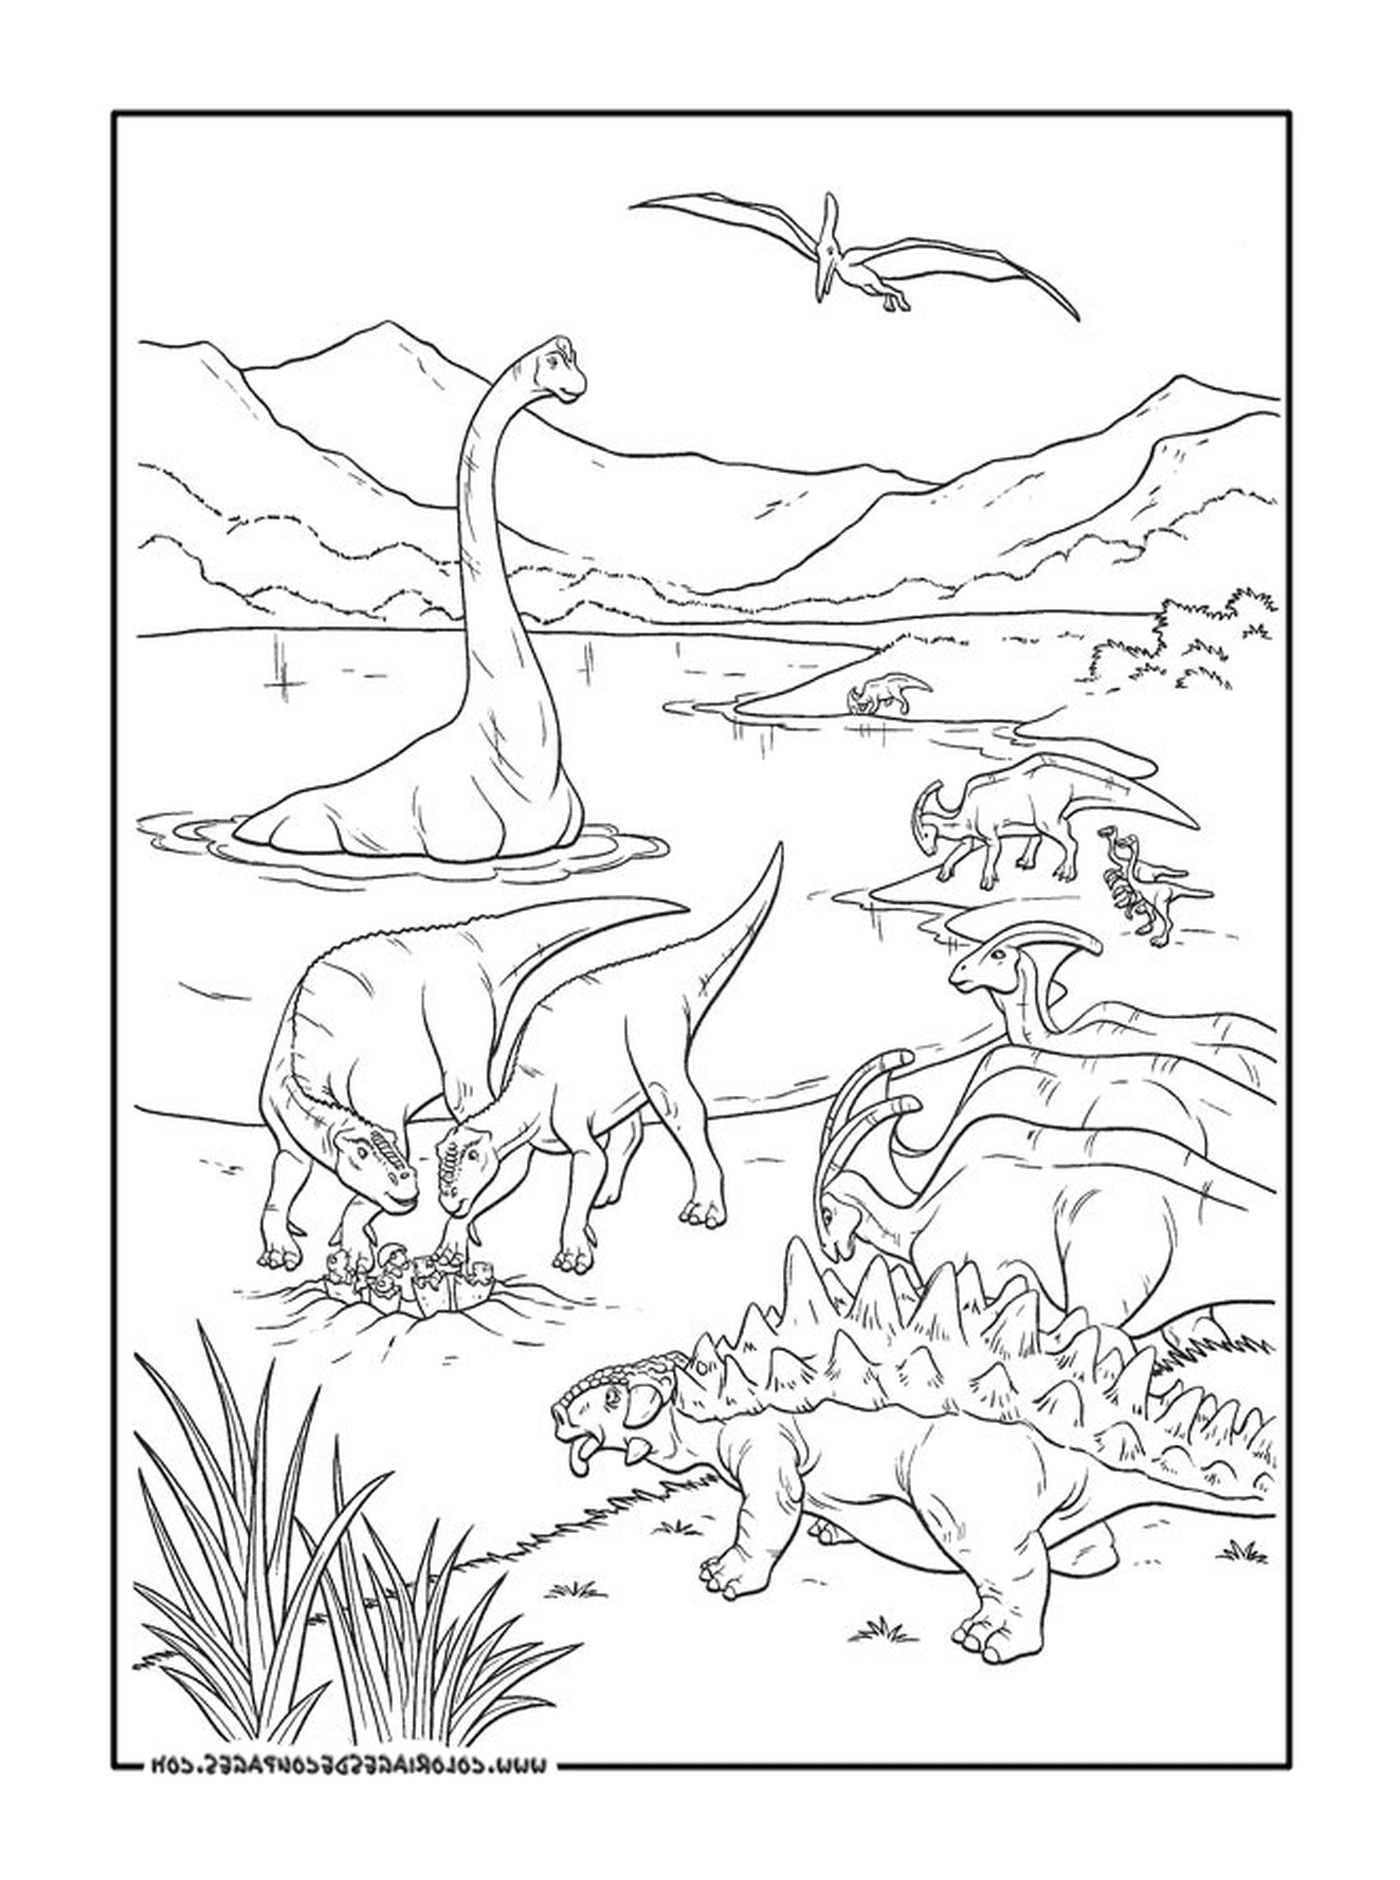  Ein Erwachsener aus einer Dinosauriergruppe 